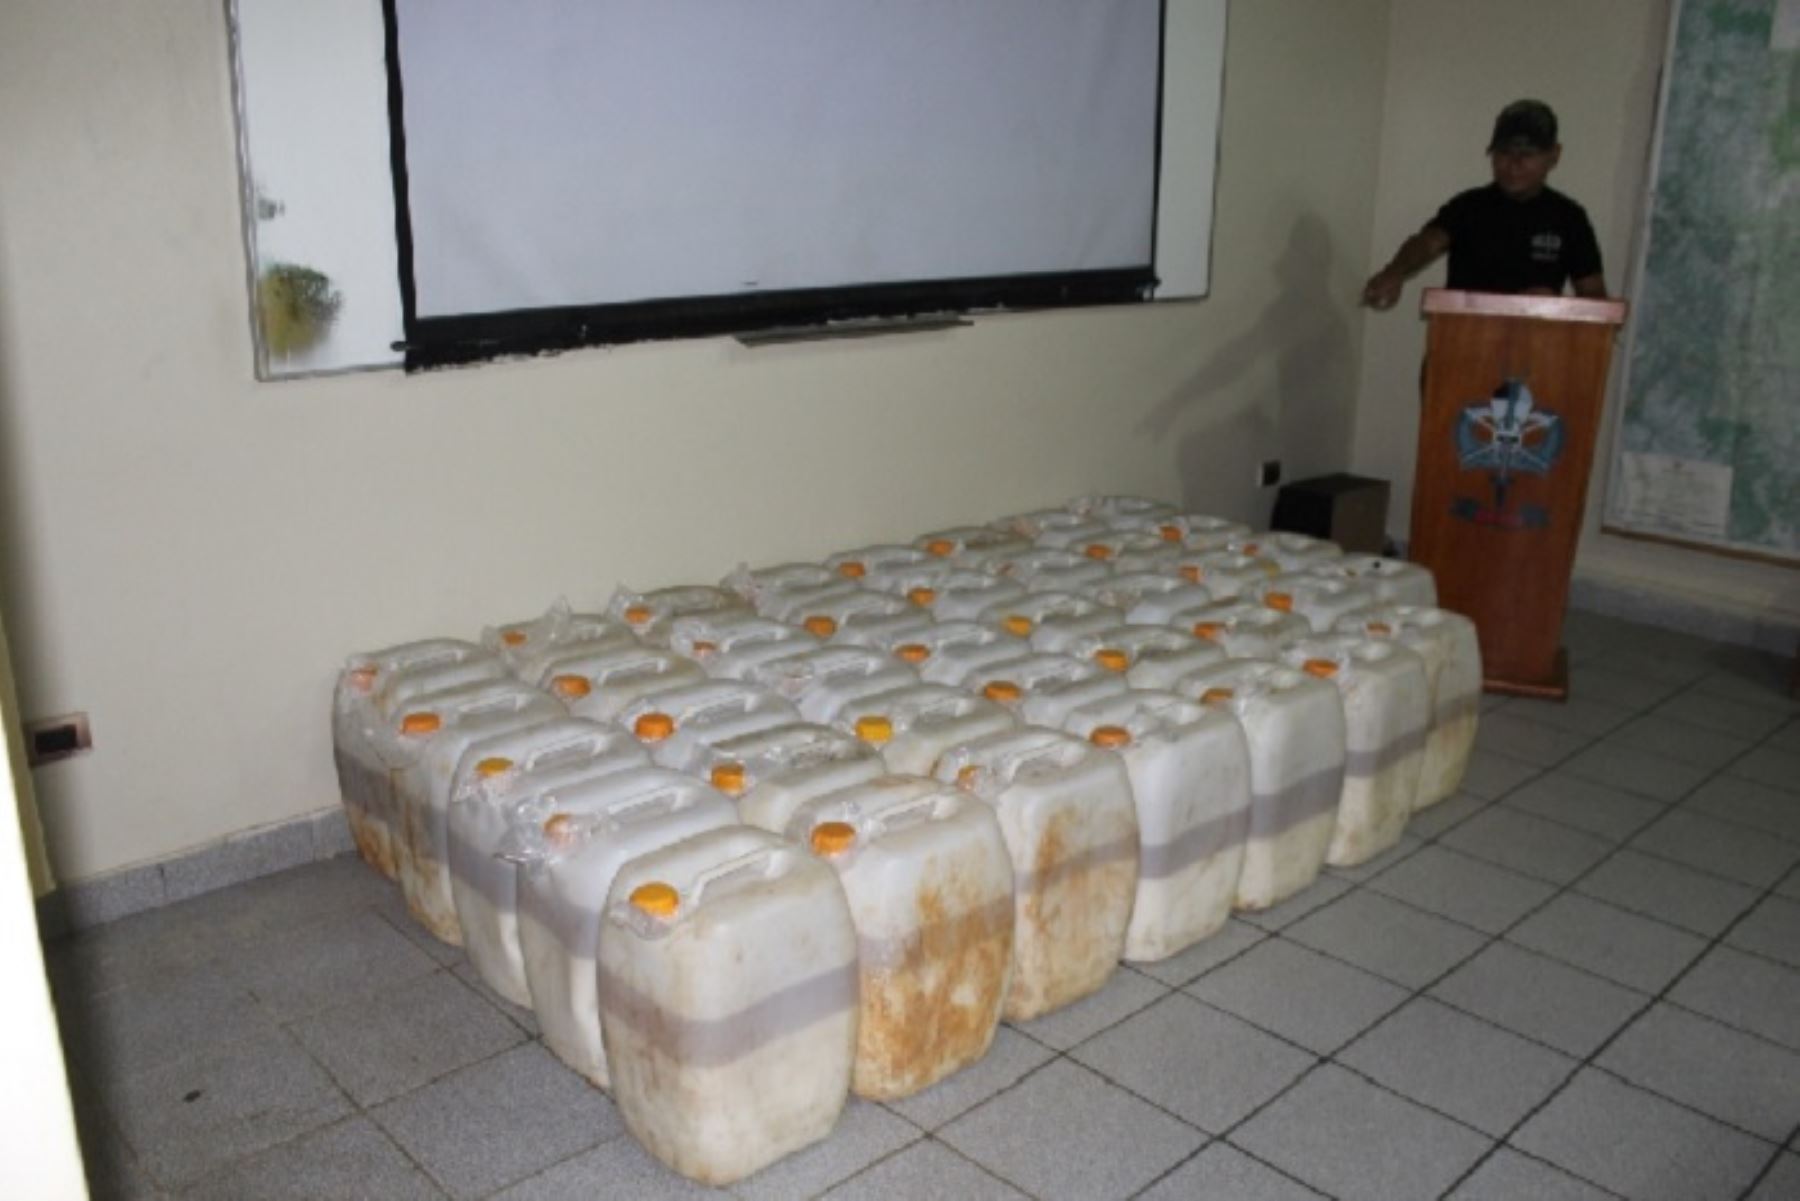 Durante un operativo helitransportado de interdicción al tráfico ilícito de drogas en la jurisdicción del Vraem, región Ayacucho, se inutilizó un laboratorio clandestino de procesamiento de cocaína, incautándose 831.670 kilos de alcaloide de cocaína en estado líquido, además de insumos químicos fiscalizados.